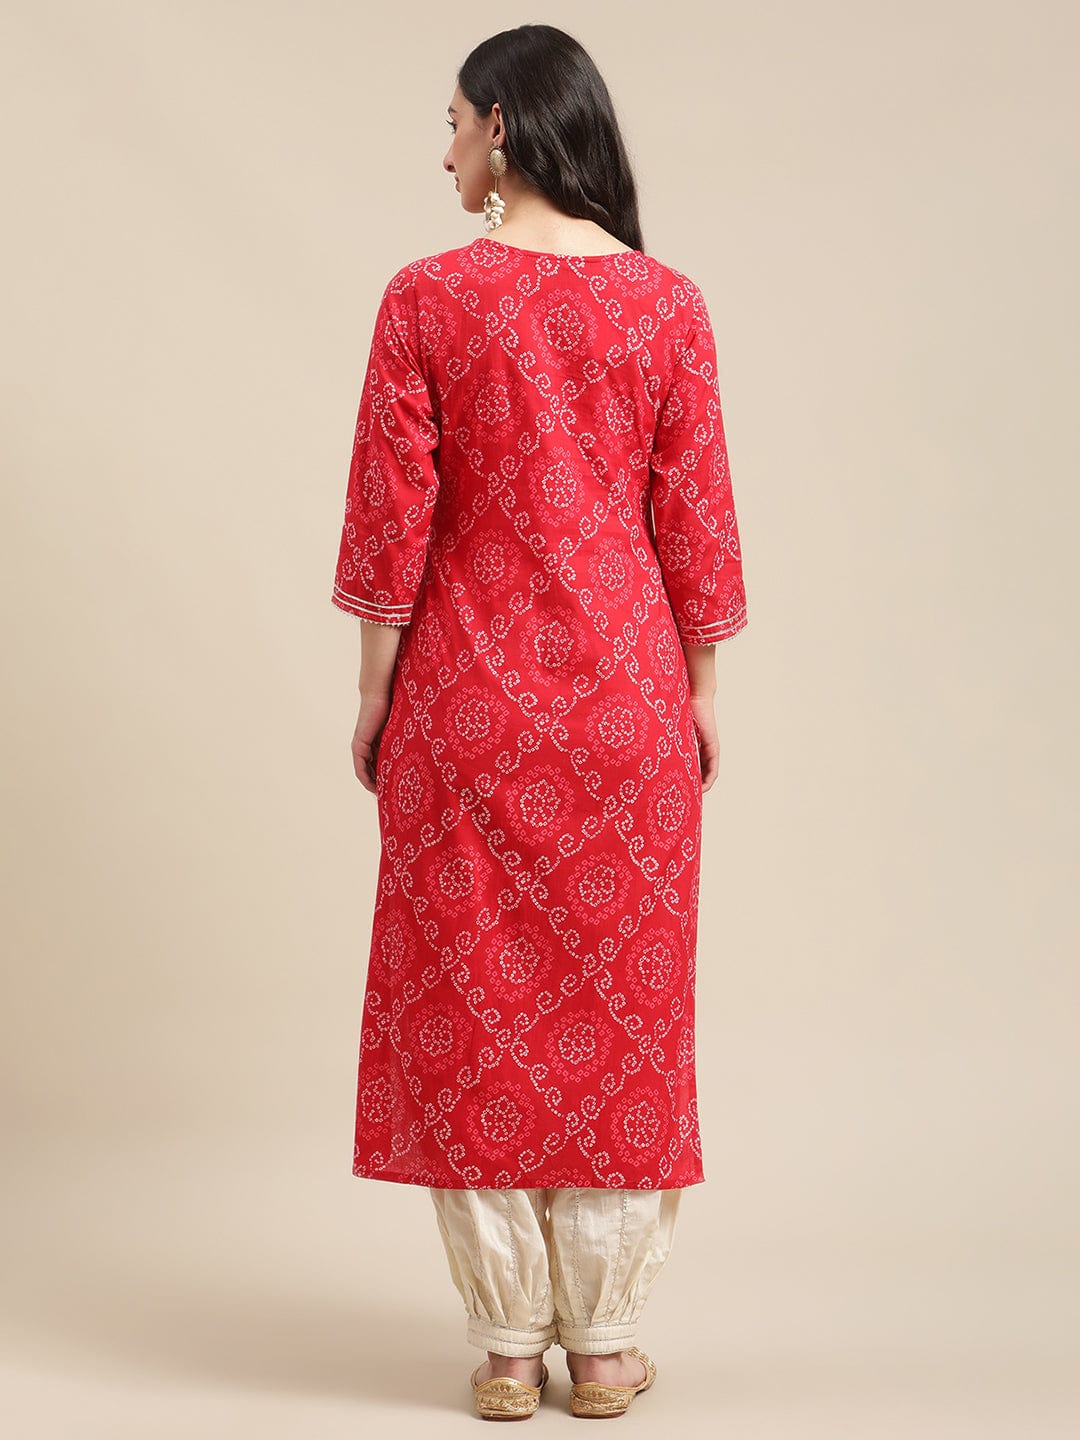 Women's Red And White Bandhej Printed Zari Embroidered Straight Kurta - Varanga